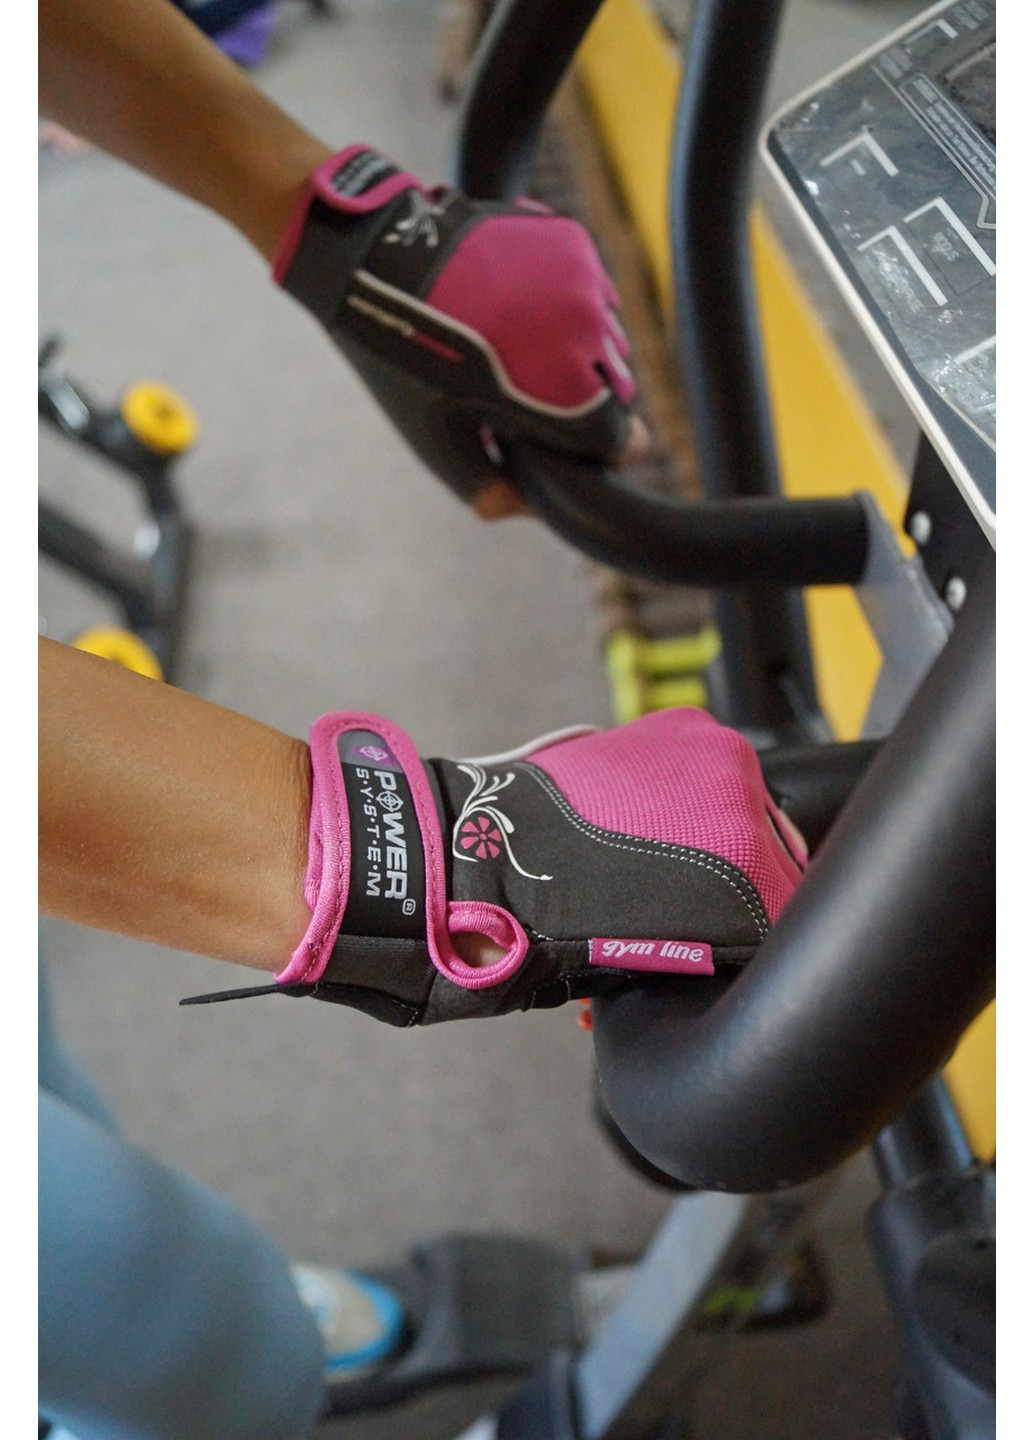 Женские перчатки для фитнеса S Power System (232677756)